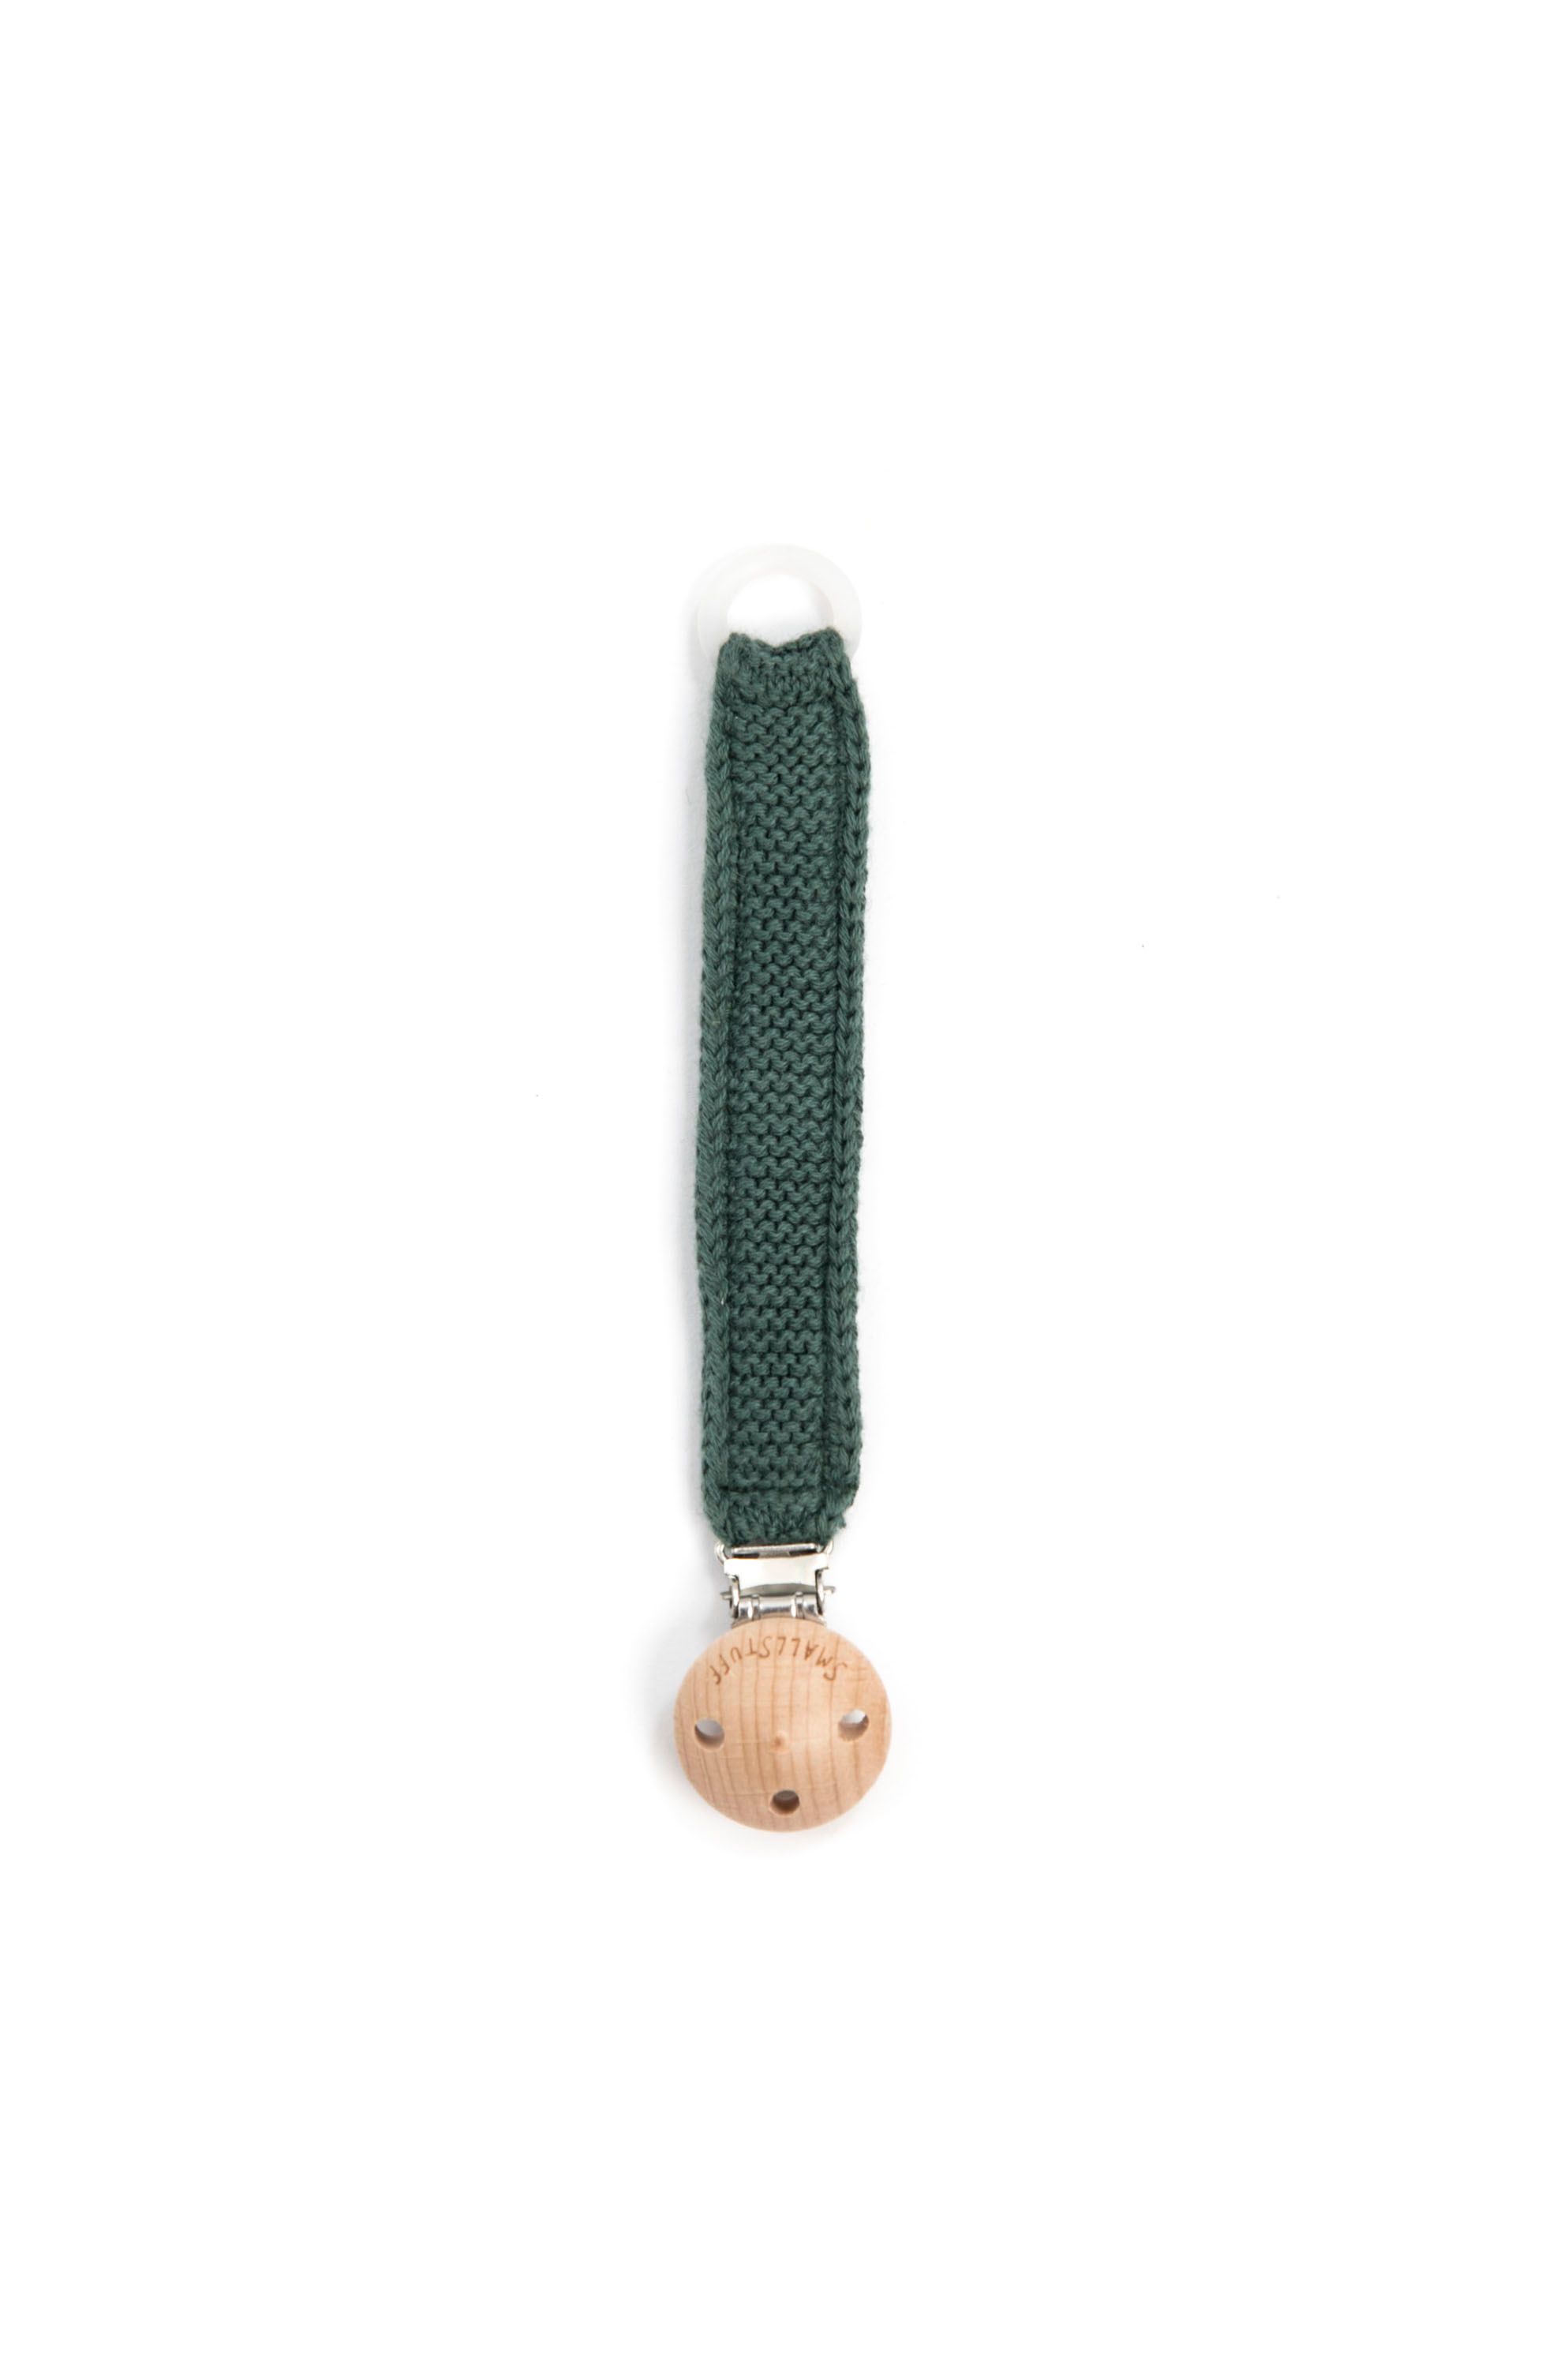 Smallstuff - Knitted Dummy Chain w. Wooden Clips - Dark Green